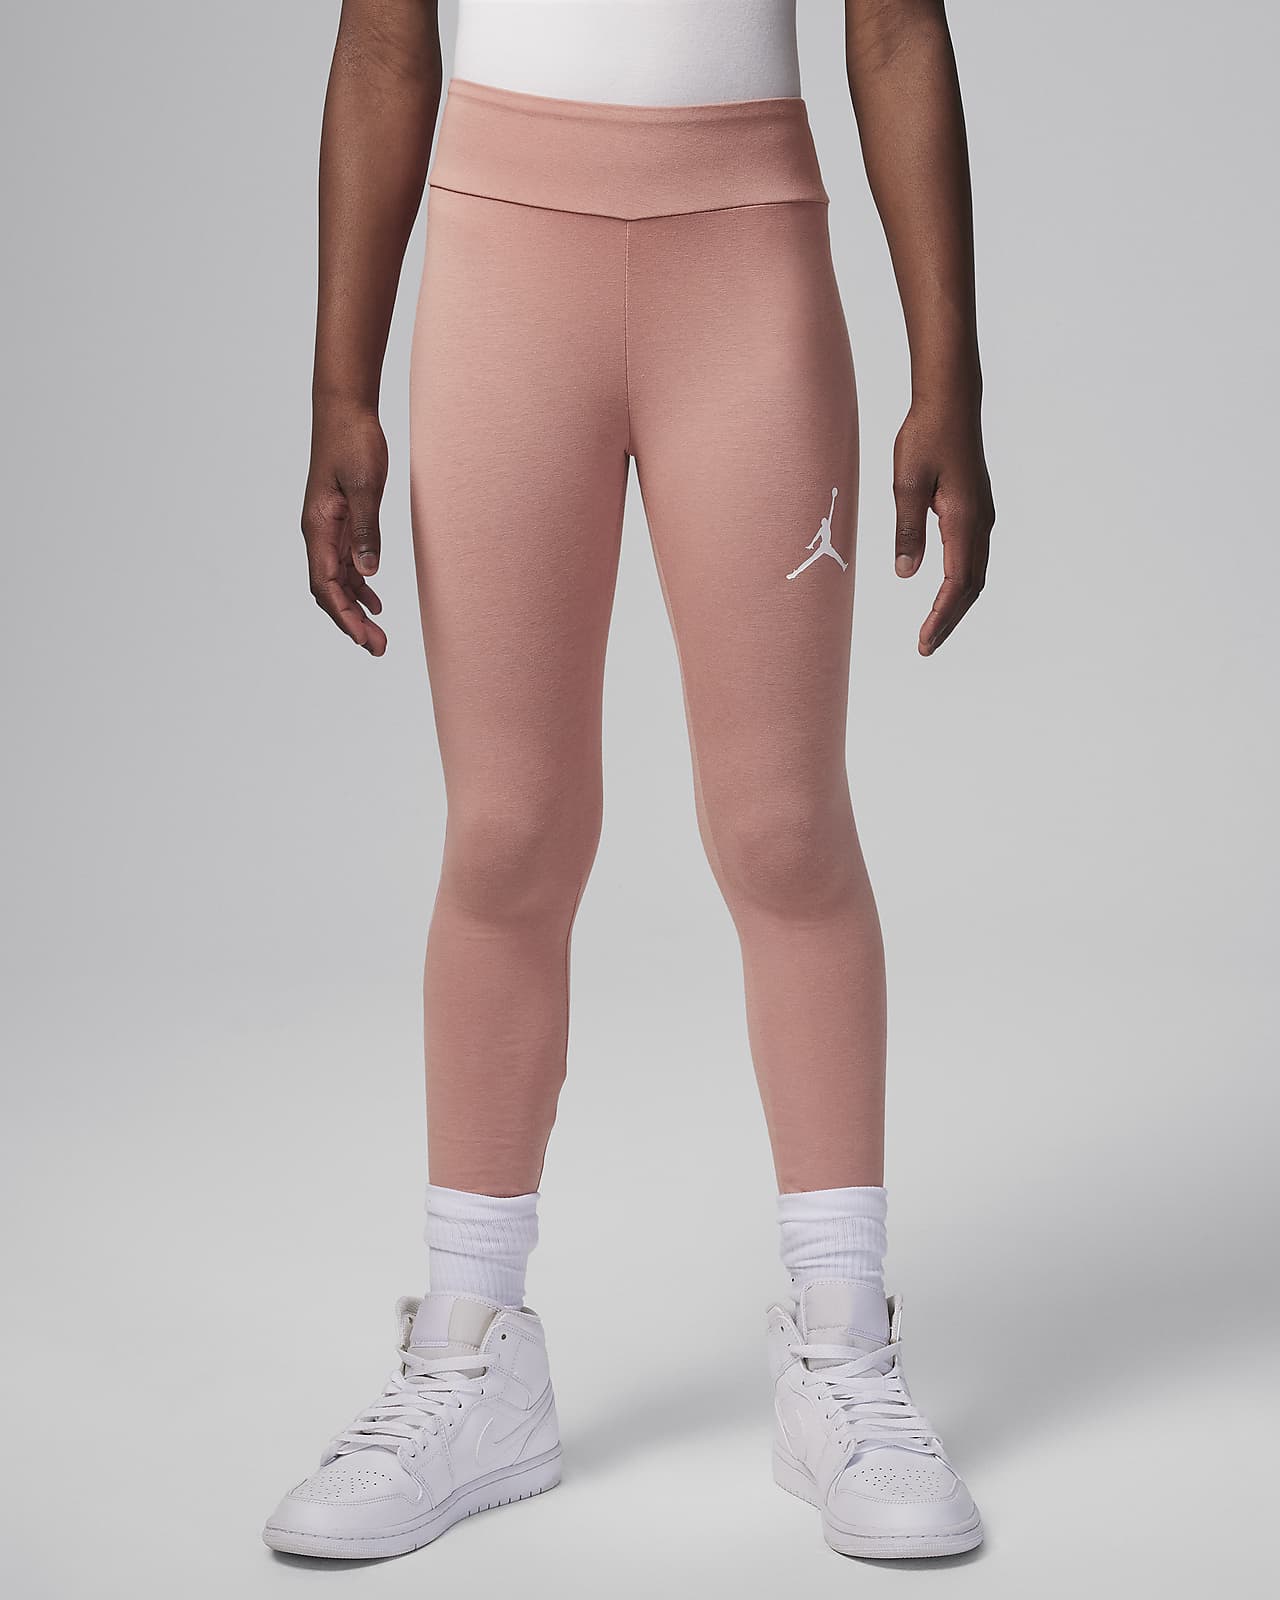 Nike Jordan Girls Dri Fit Air Compression Training Capris Leggings